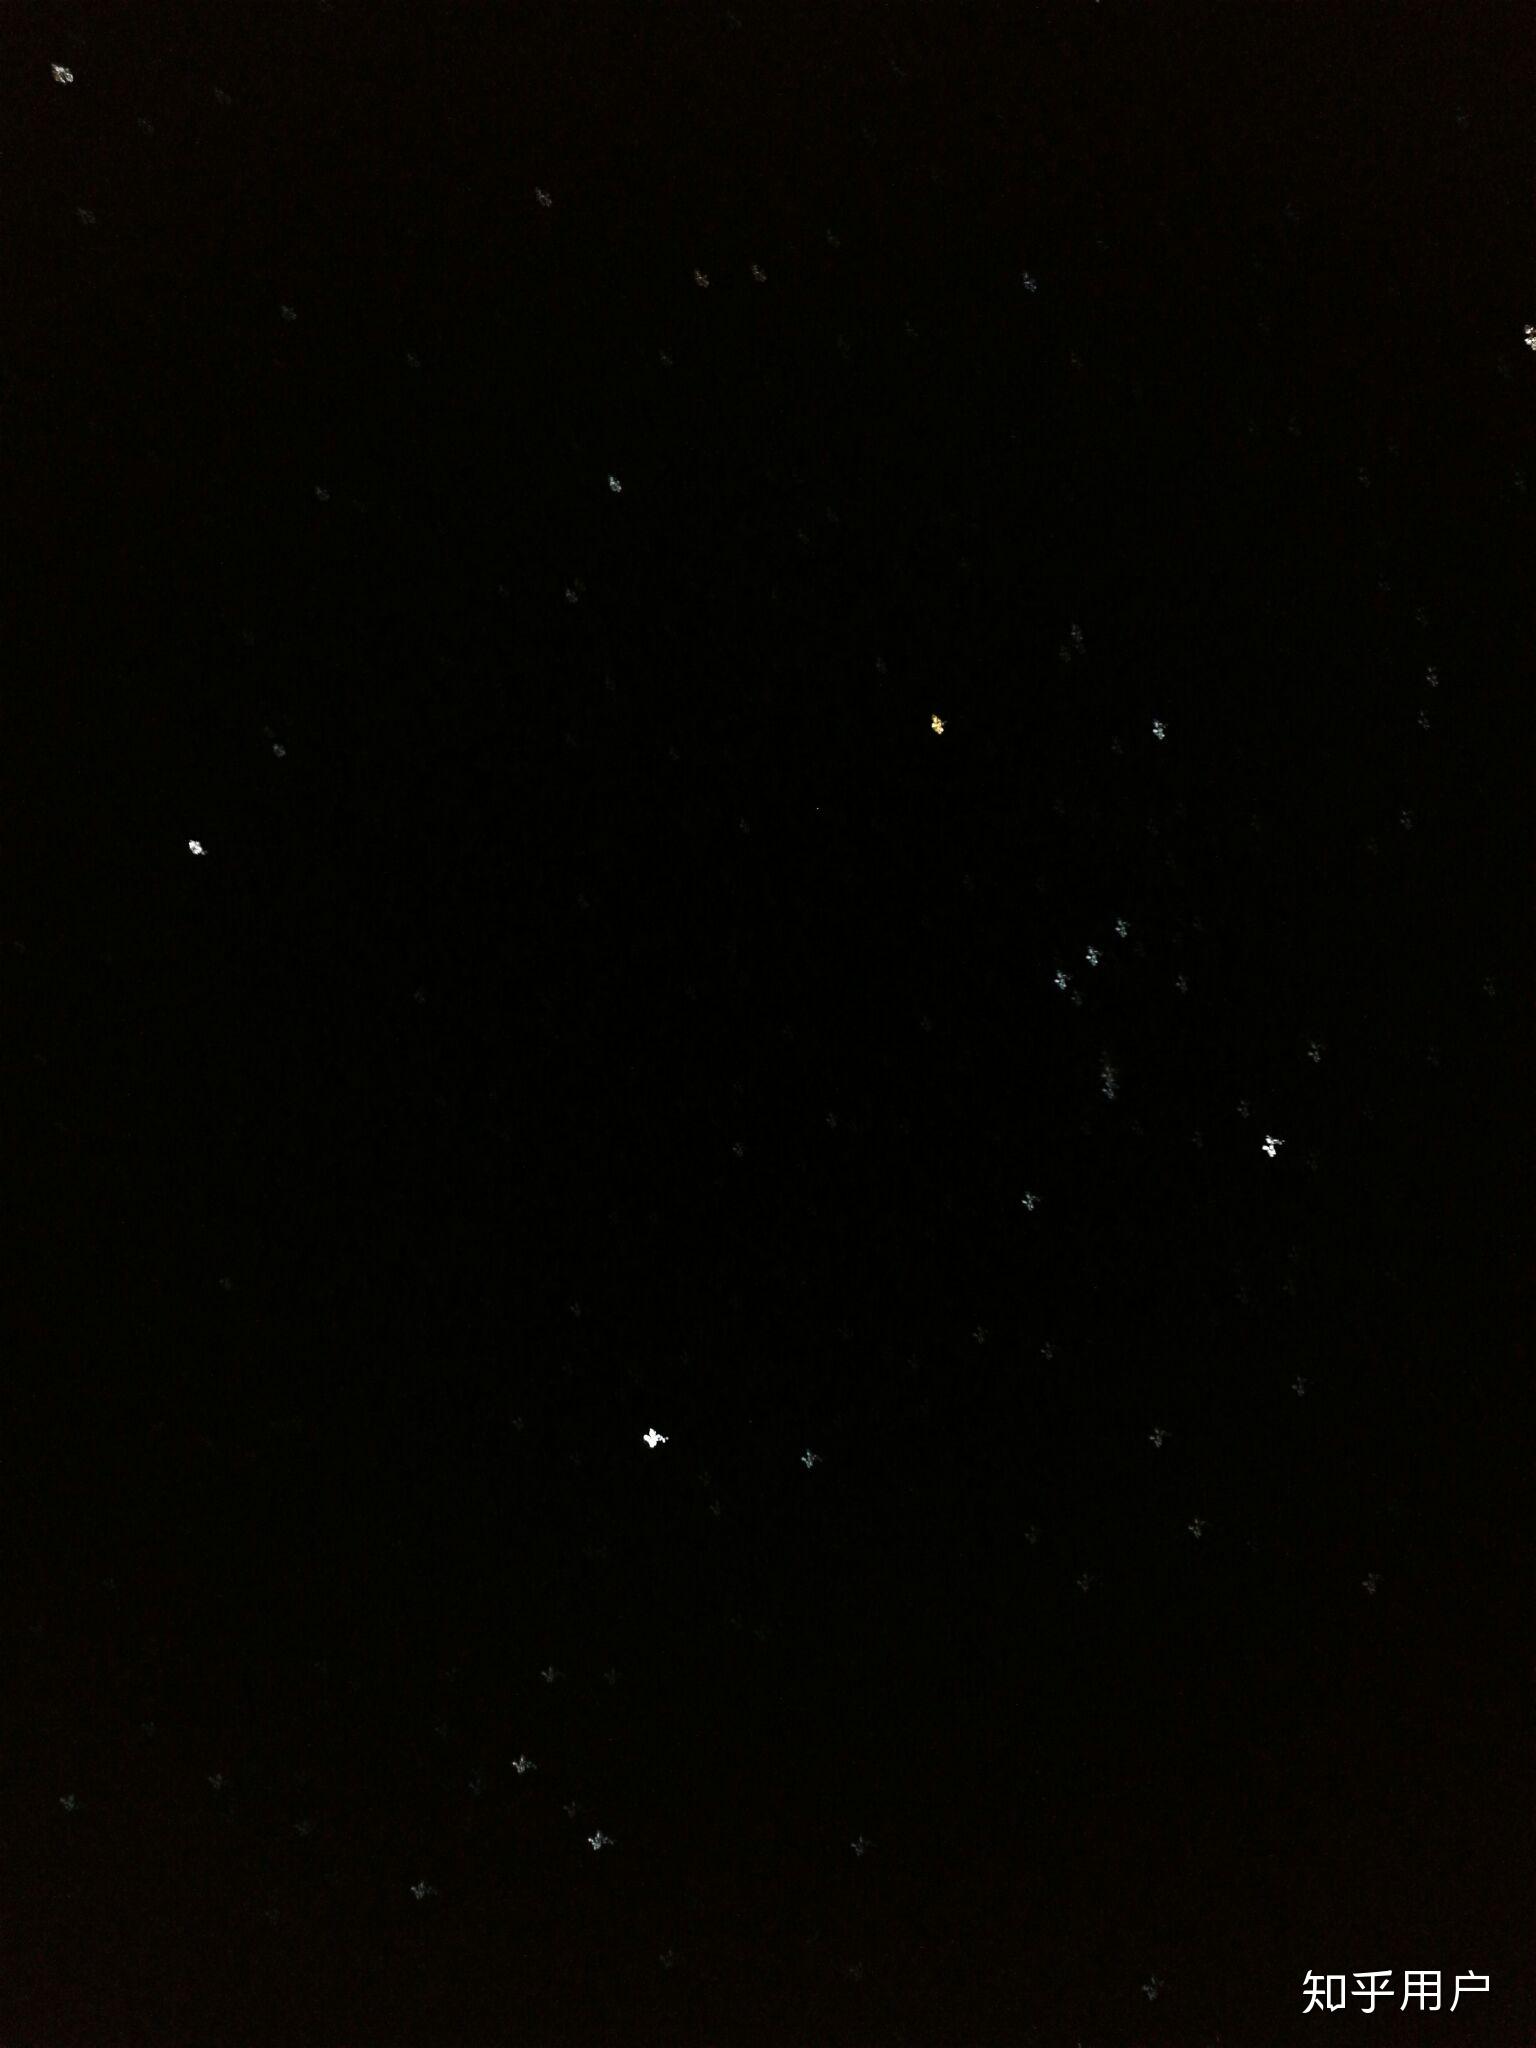 星星的照片黑夜图片